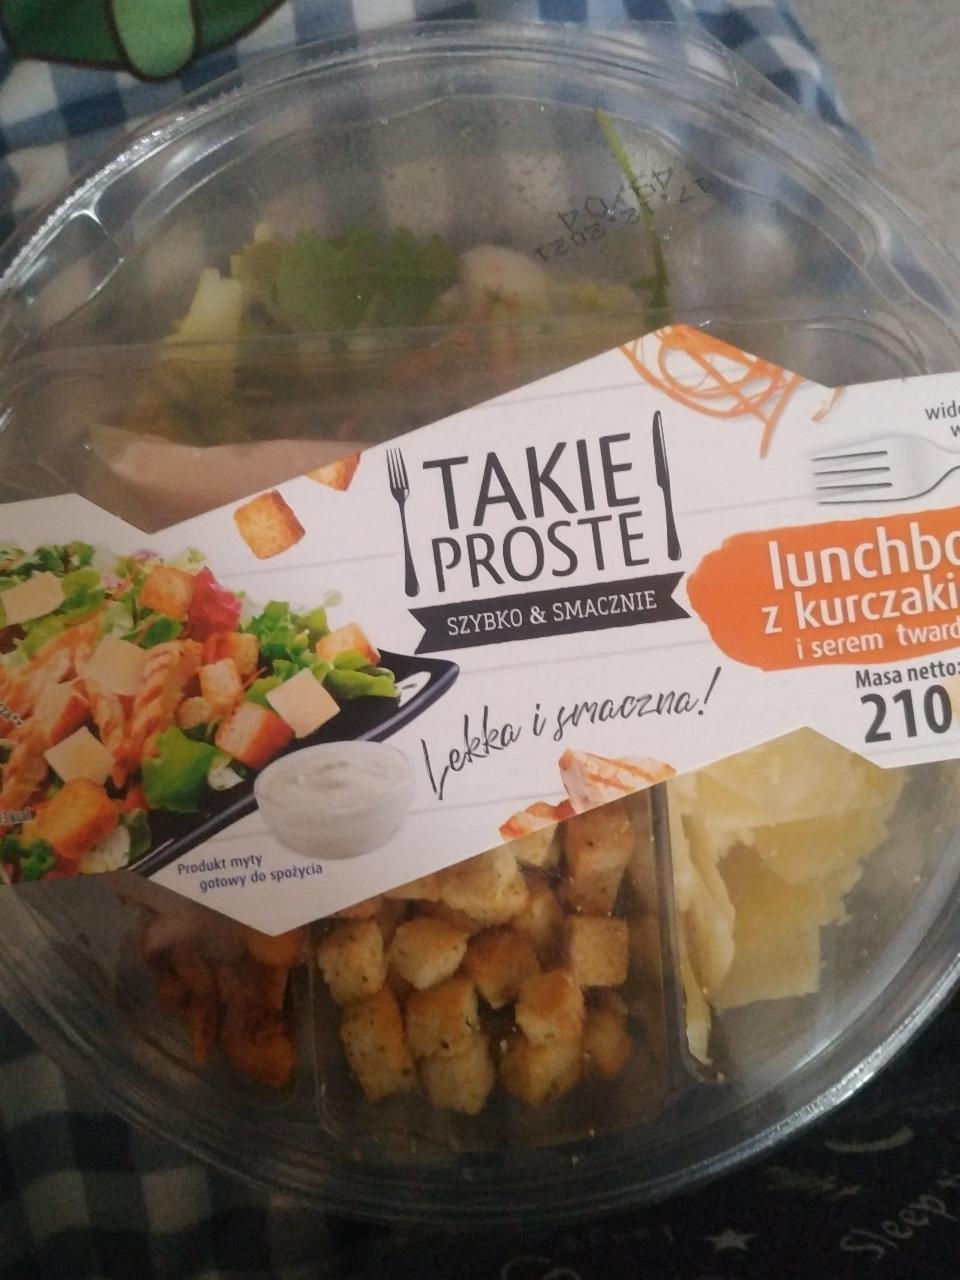 Фото - Lunchbox z kurczakiem салат с курицей Takie proste